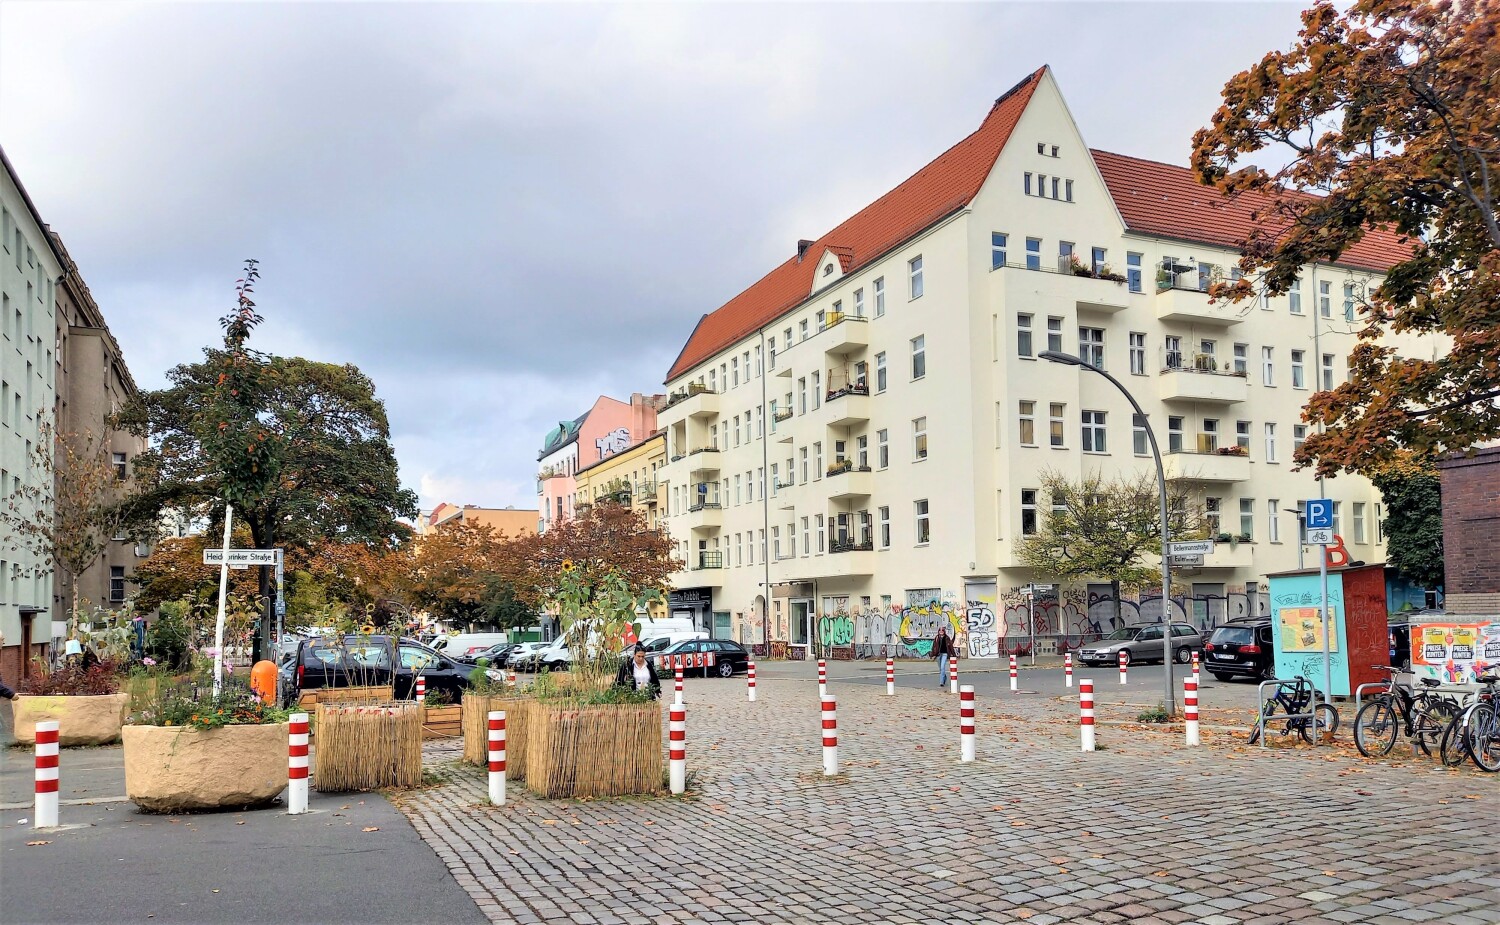 Kiezblock Bellermannkiez: Modalfilter an der Kreuzung Bellermannstraße / Heidebrinker Straße / Eulerstraße